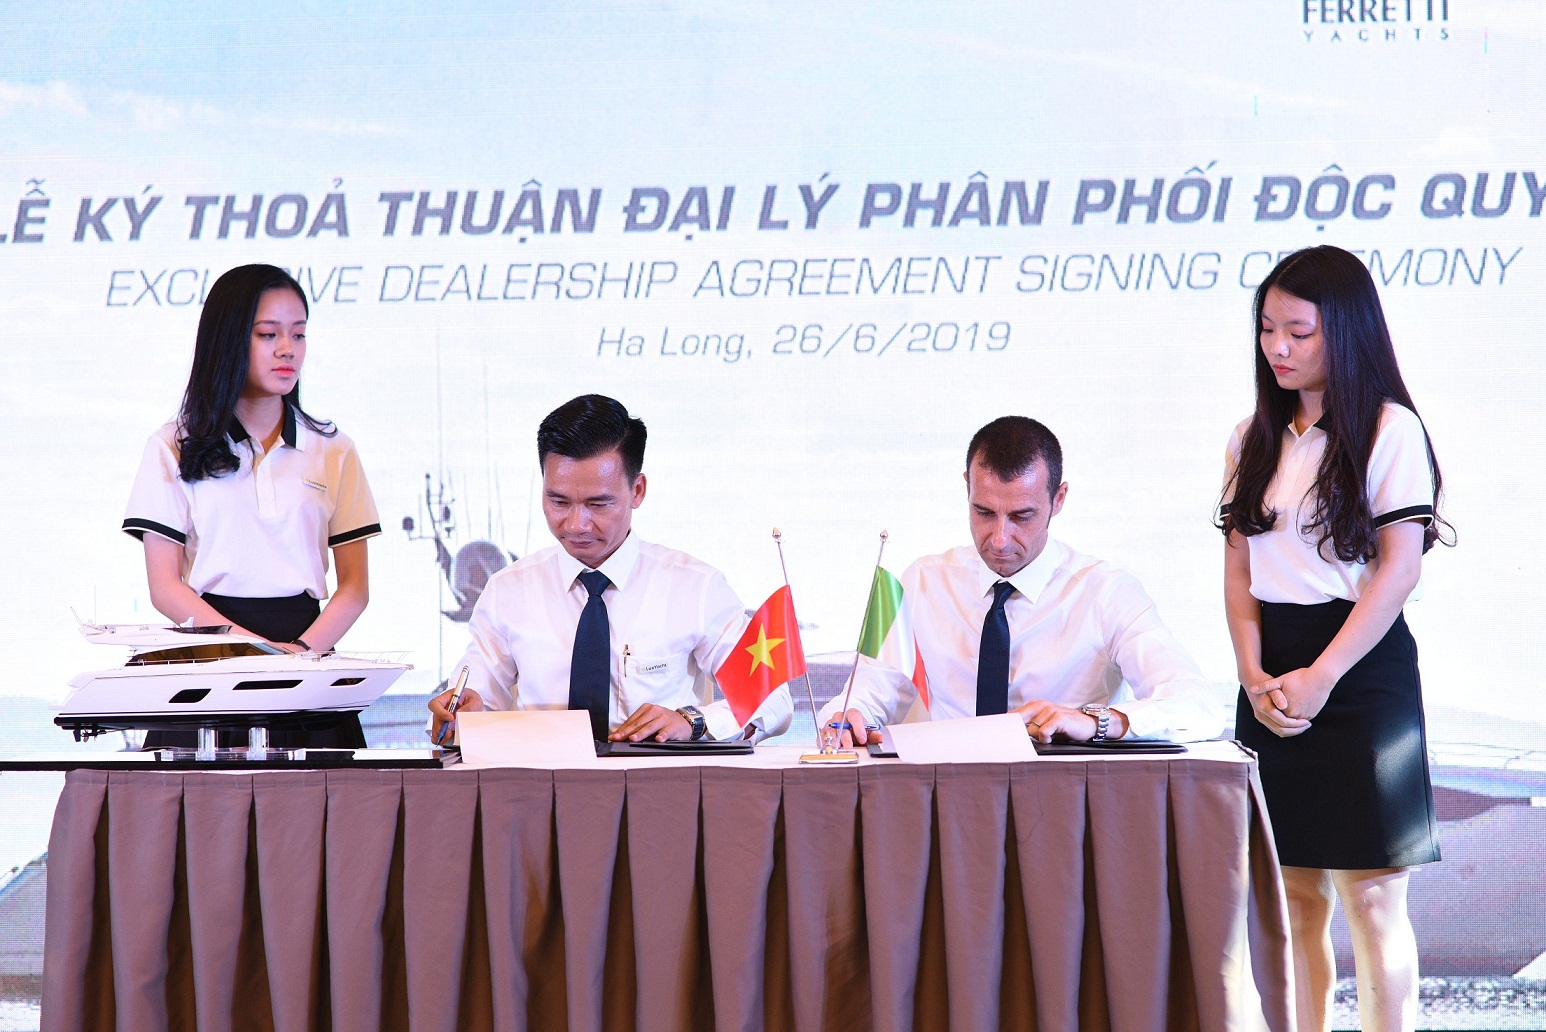 Đại diện của LuxYacht và Ferretti Group ký hợp đồng đại lý phân phối độc quyền 3 thương hiệu du thuyền siêu sang của Tập đoàn Ferretti tại Việt Nam.